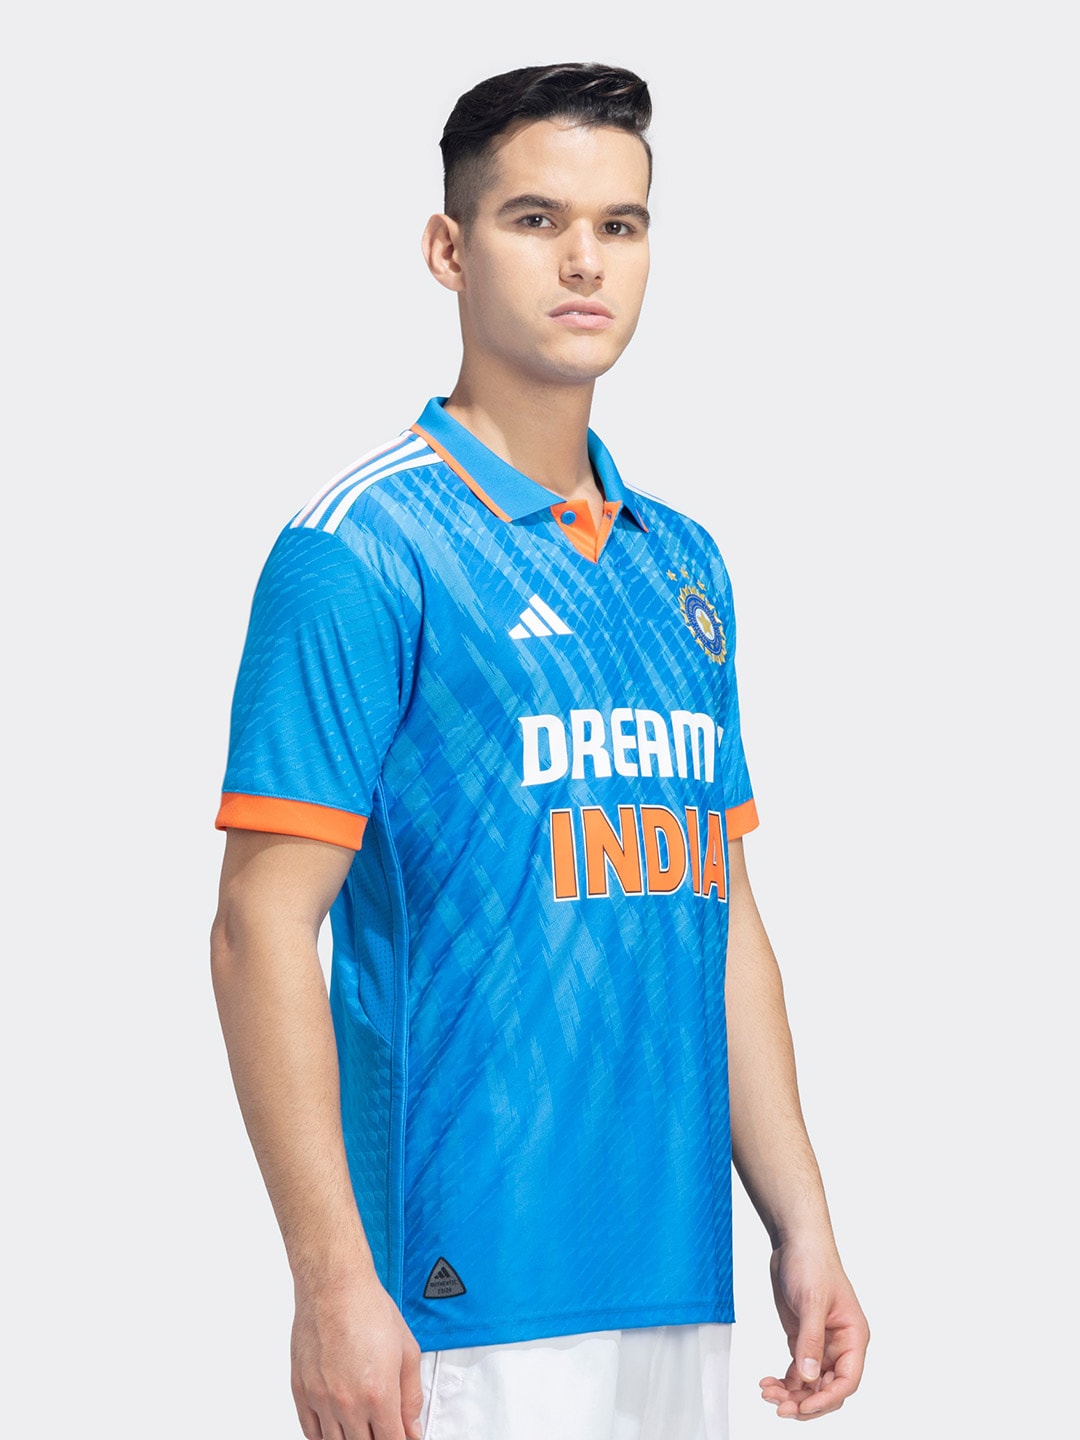 Adidas India Cricket ODI T-Shirt - Distacart